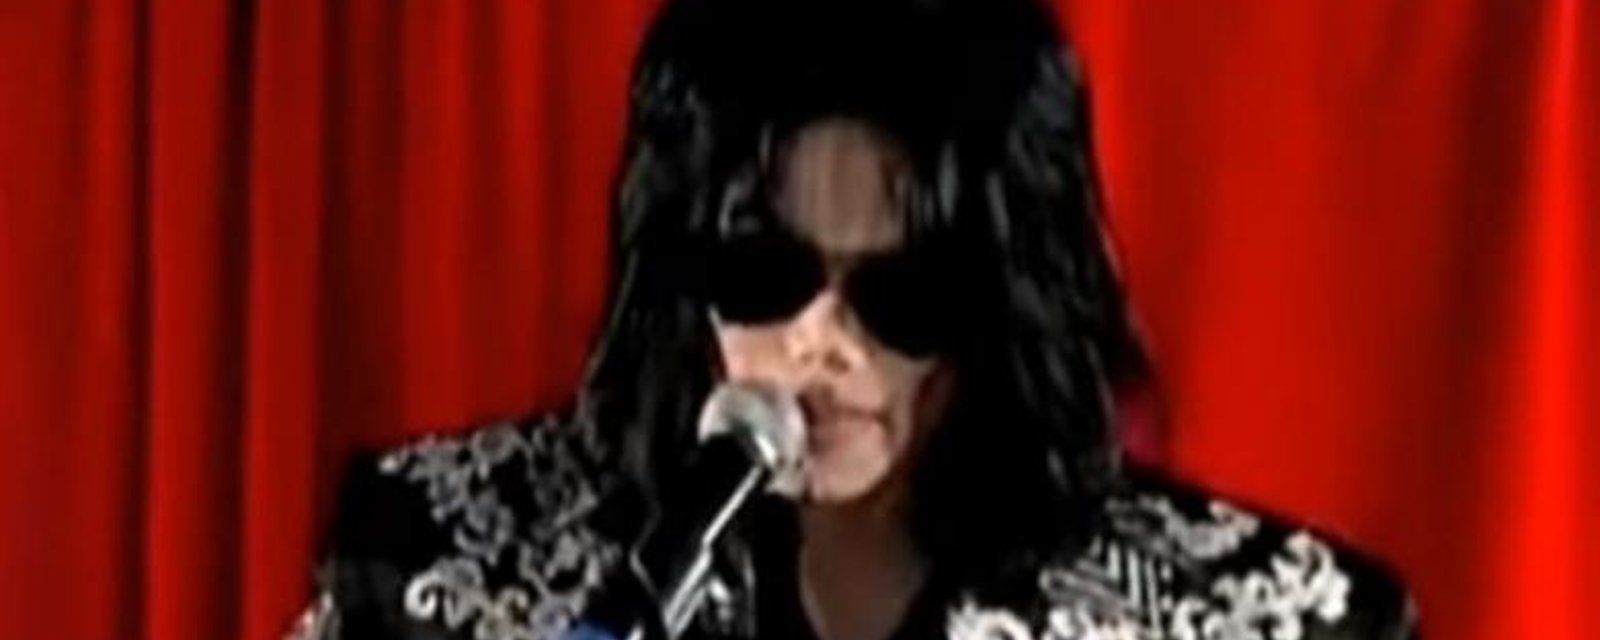 Un selfie très troublant laisse croire que Michael Jackson pourrait être encore vivant...